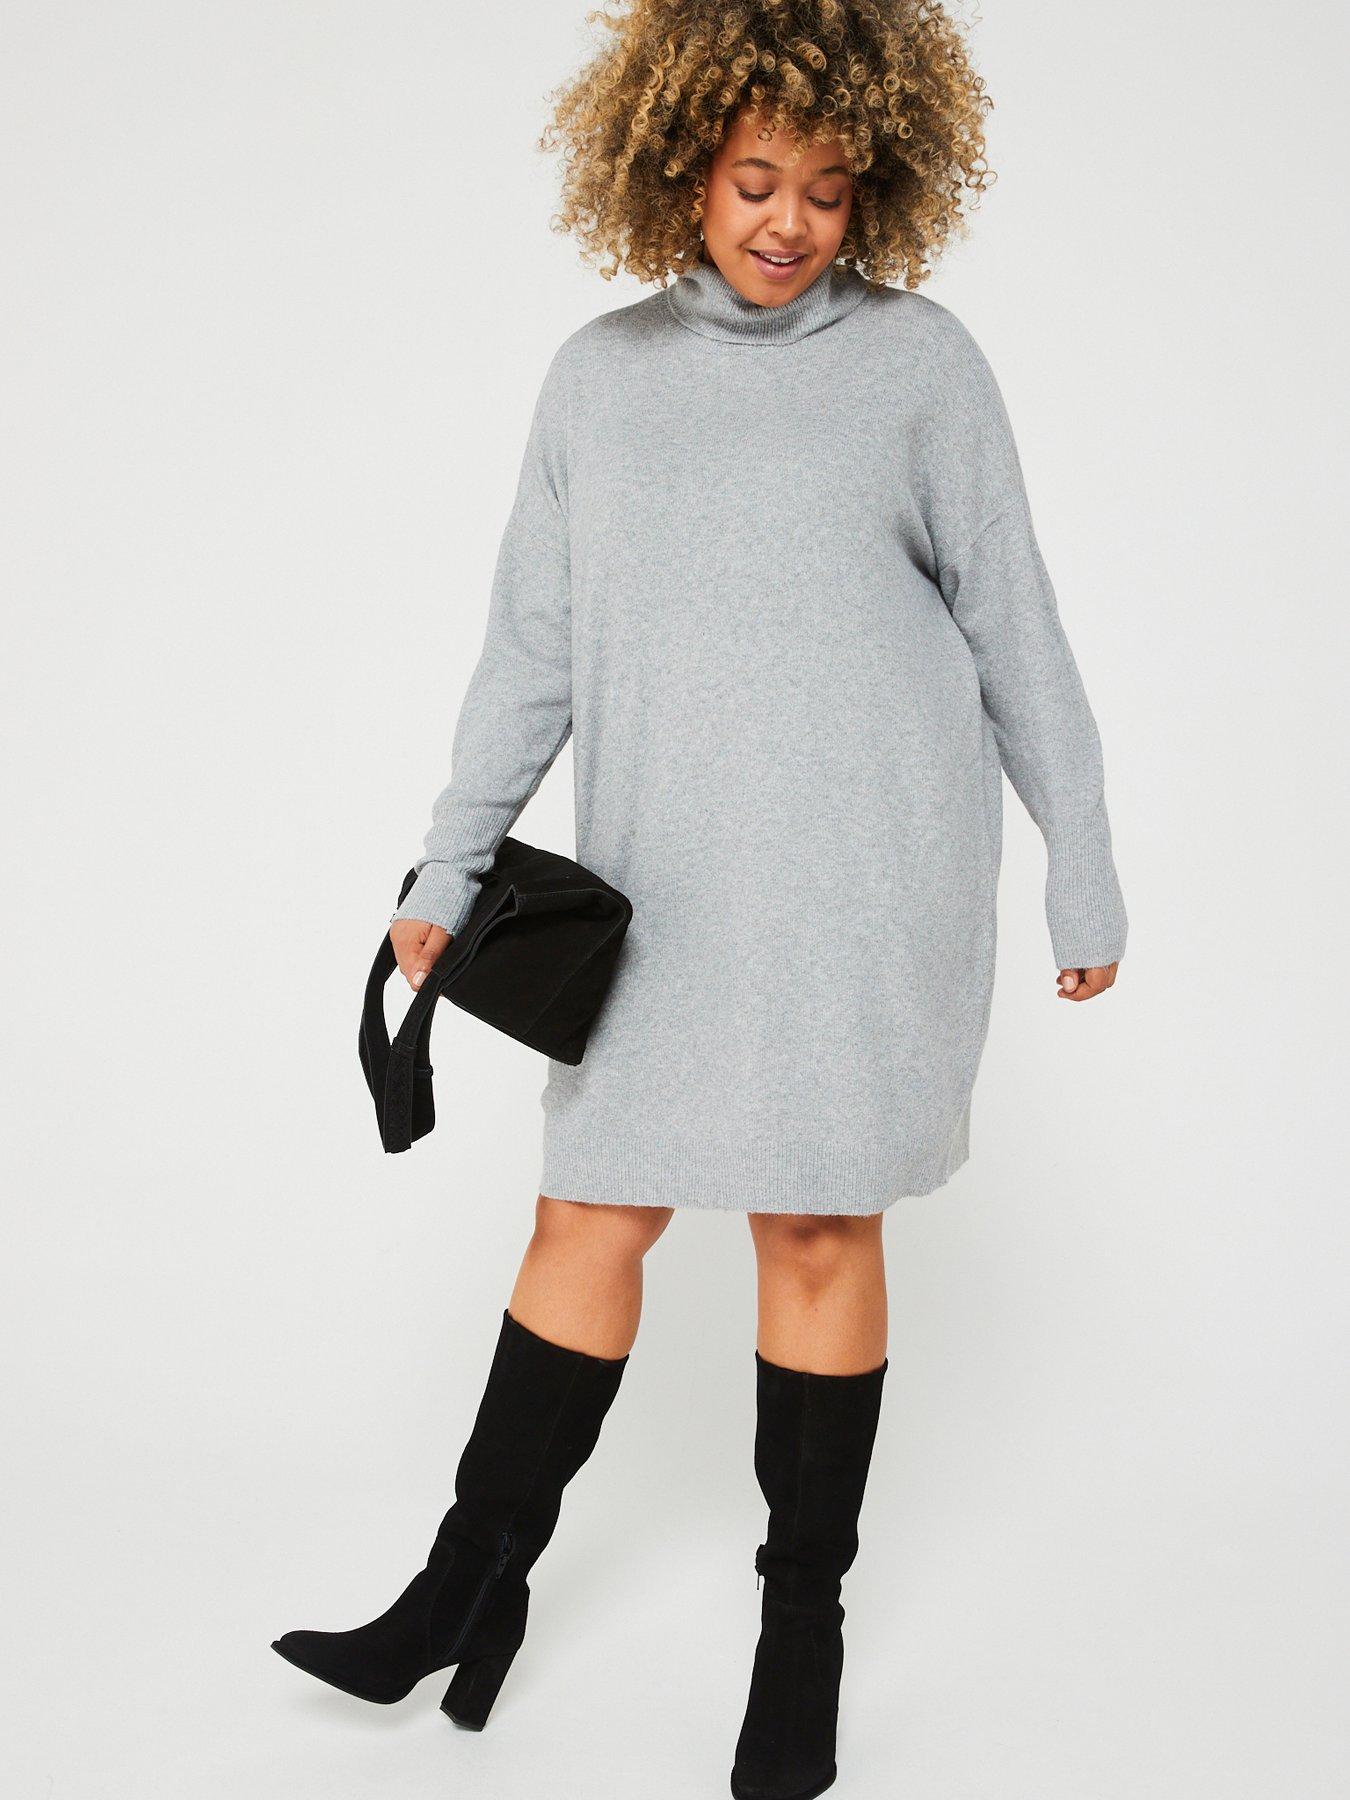 Grey High Neck Knitted Jumper Dress, AX Paris